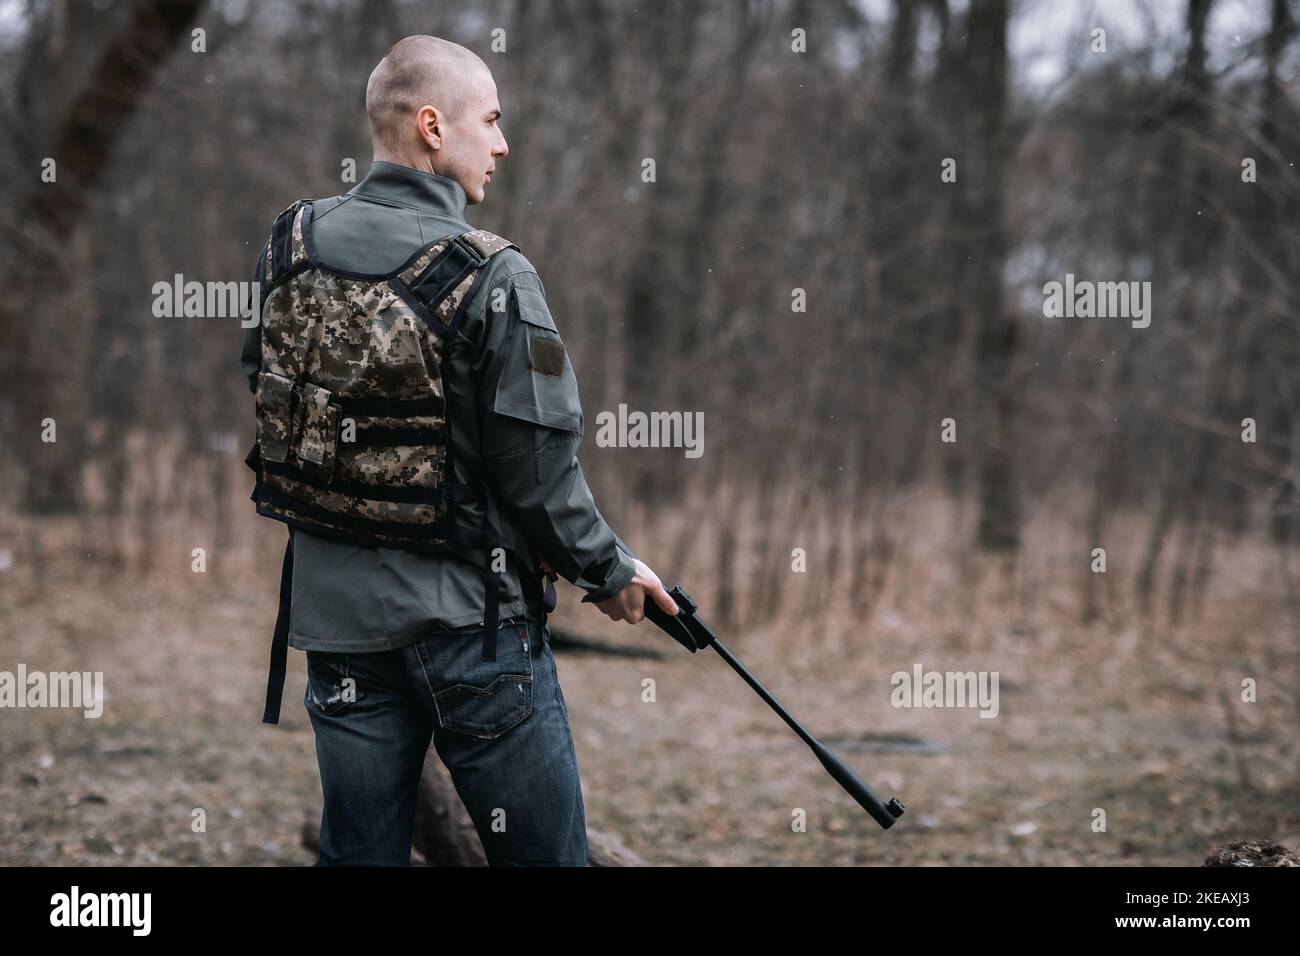 Very bloody war between Russia and Ukraine. Stock Photo